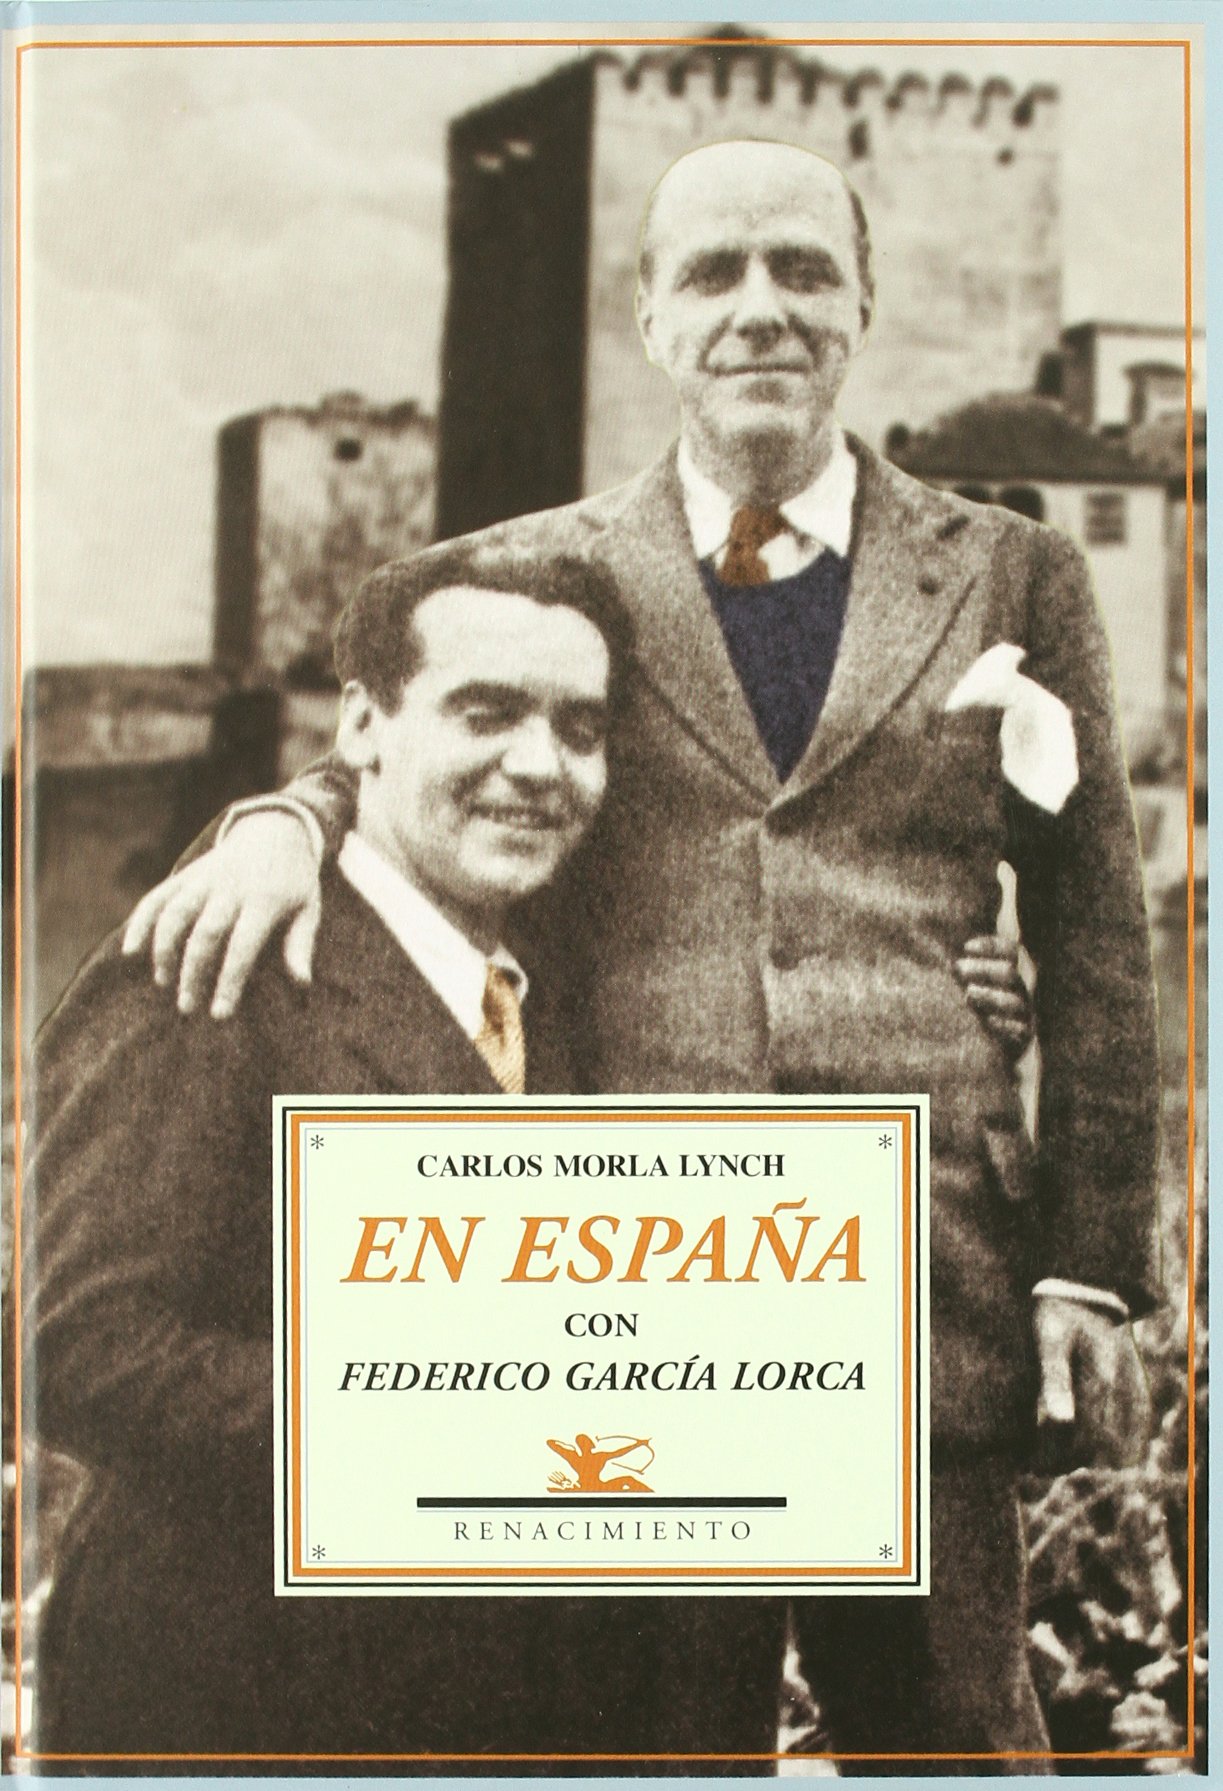 Los diarios de Carlos Morla Lynch (Santiago de Chile, 1885 - Madrid, 1969) son quizá la mejor fuente documental para conocer la vida intelectual española